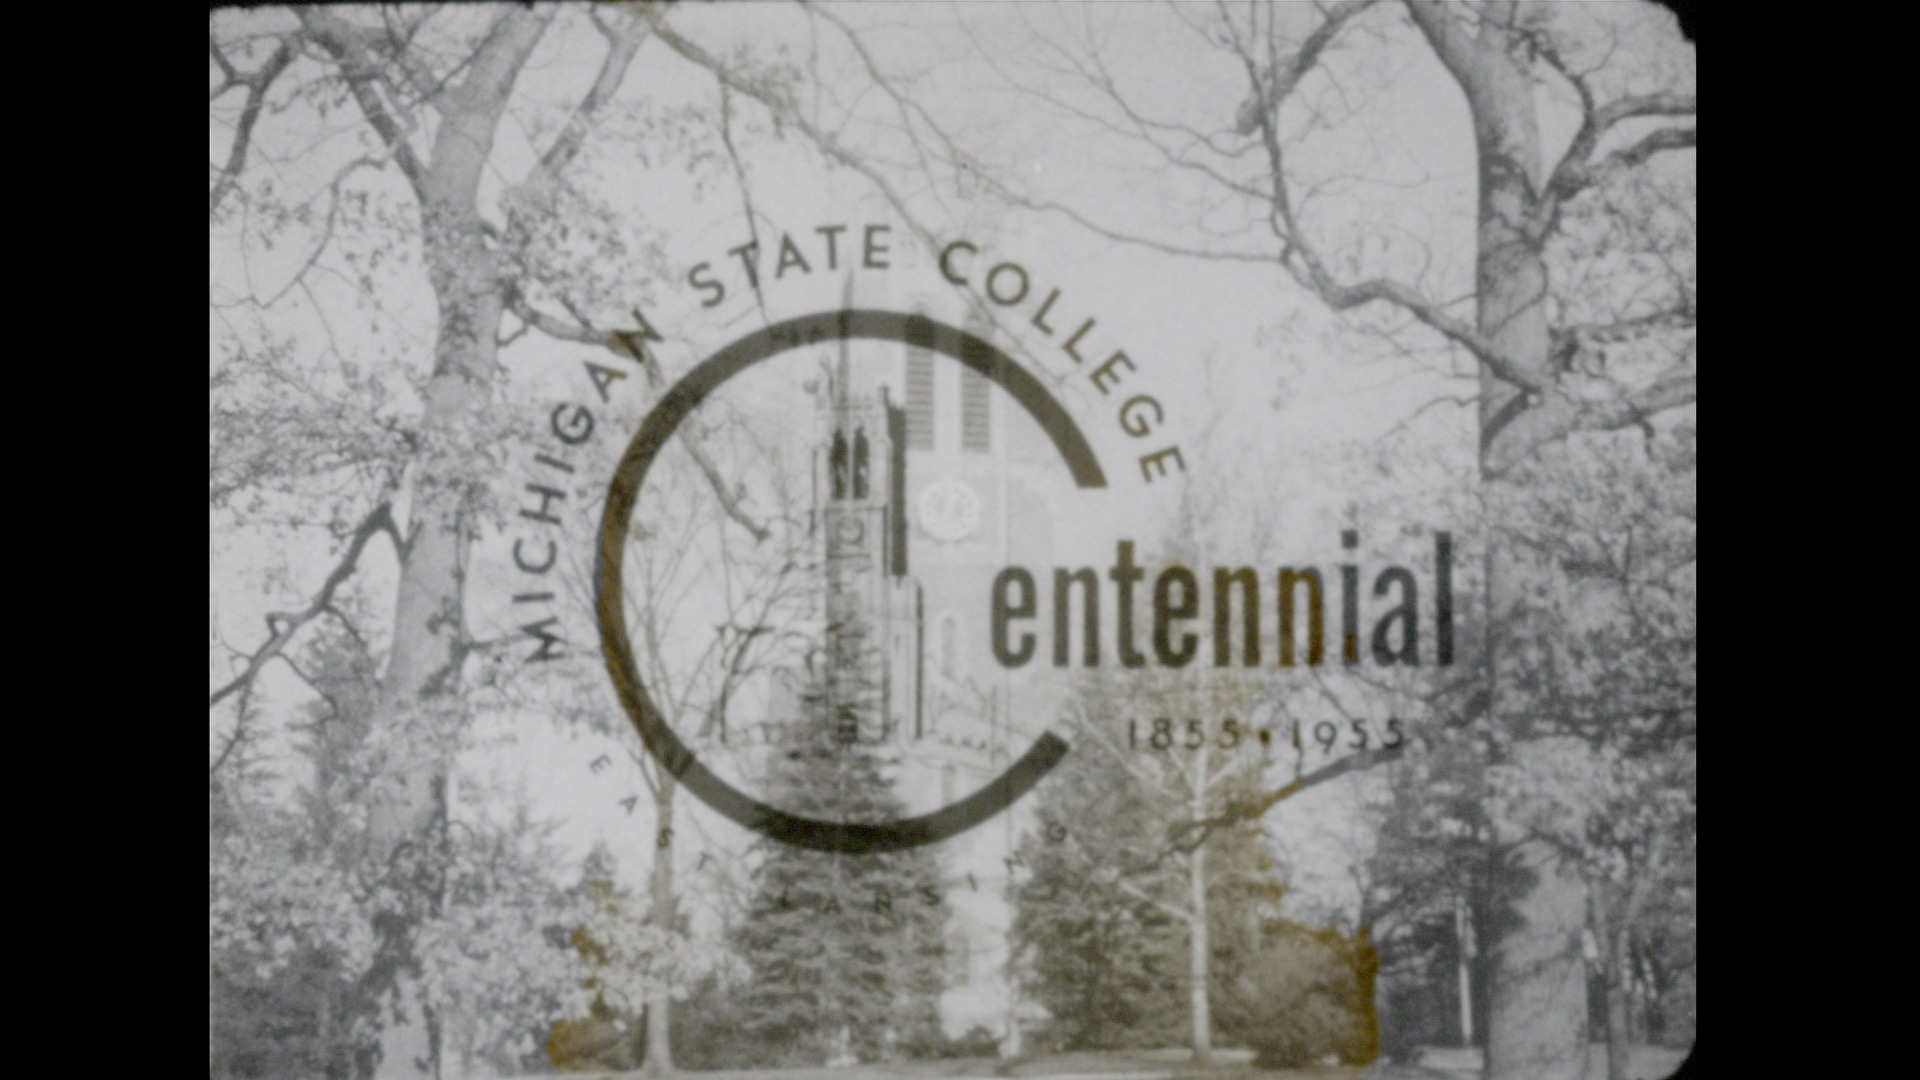 MSC Centennial, 1955